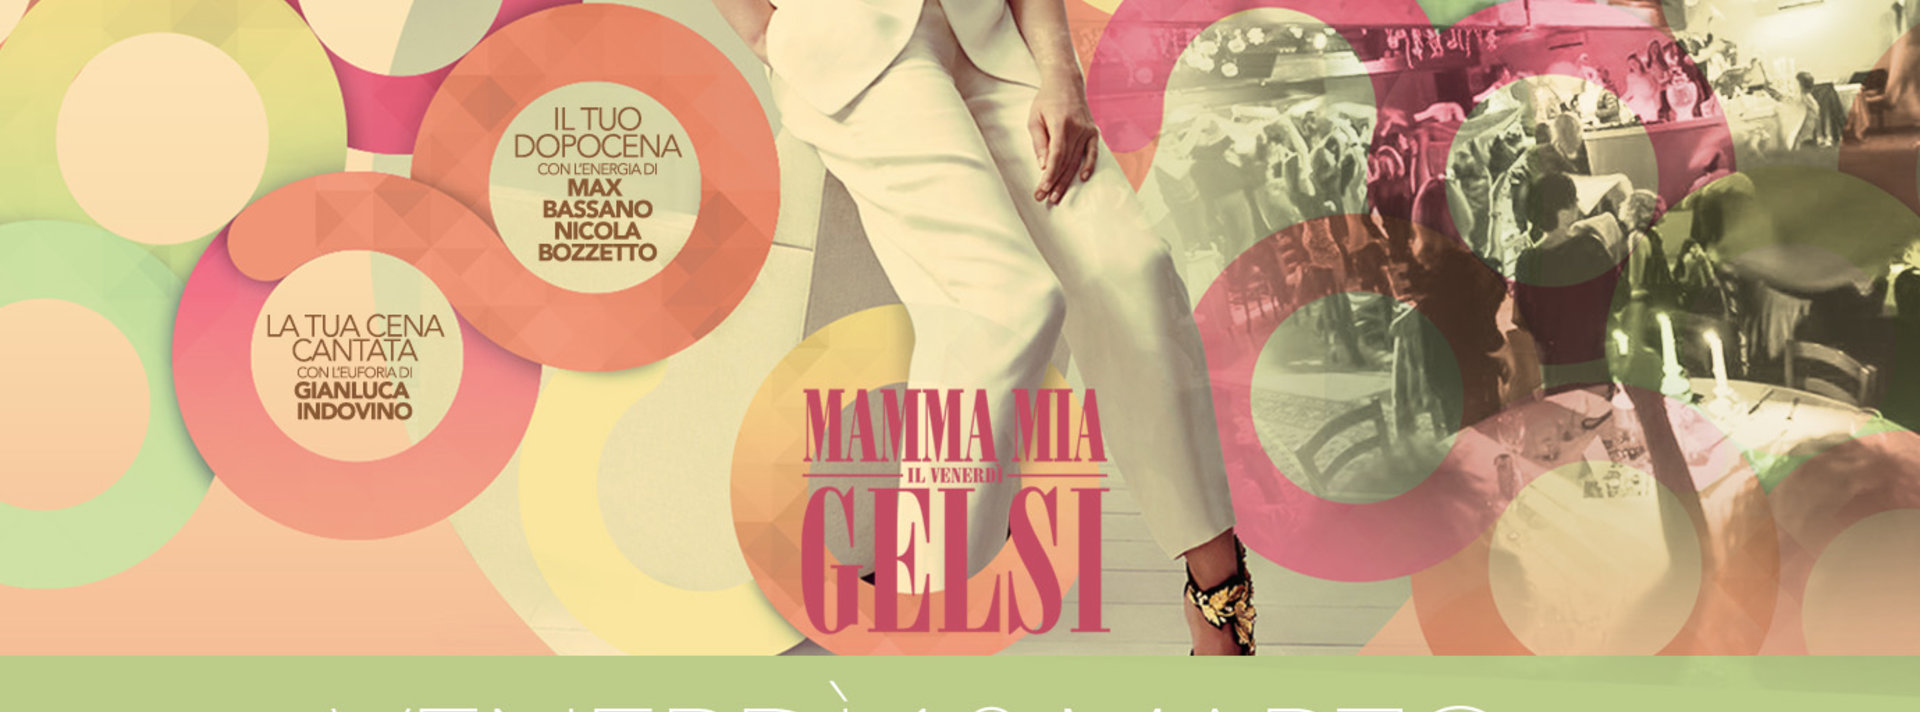 Cena cantata Mammamia Gelsi venerdi 18 marzo 2016 